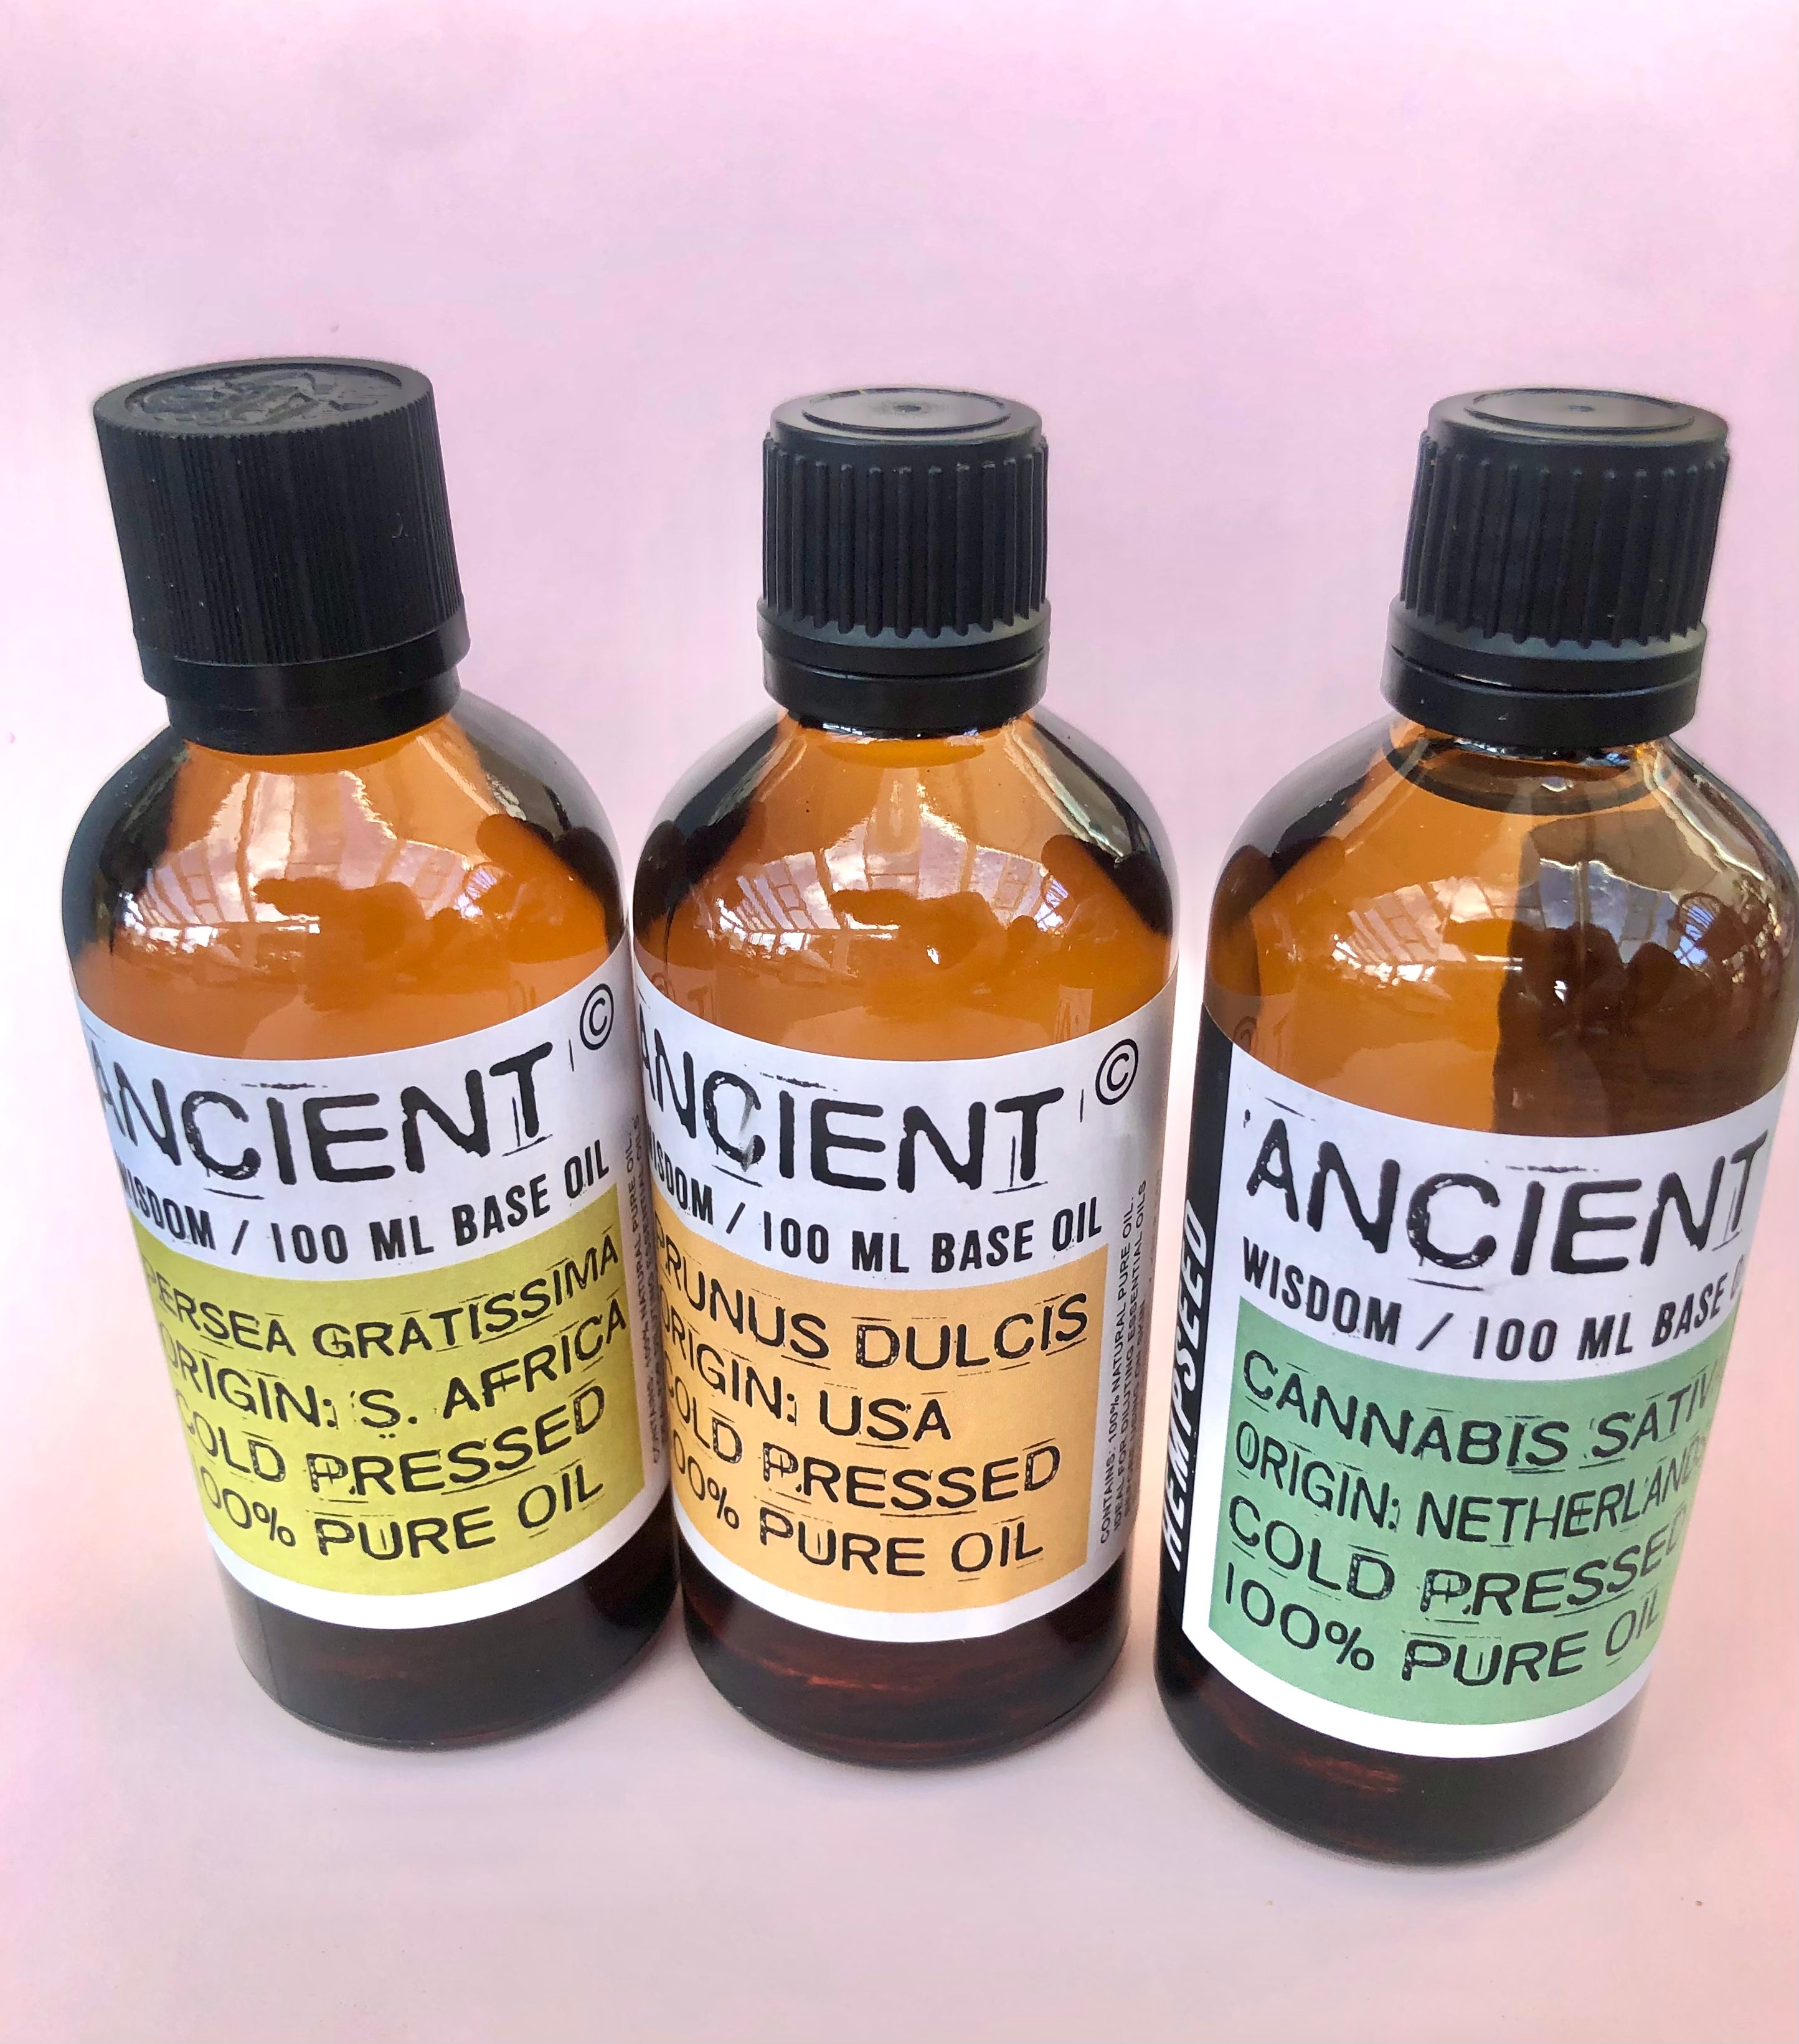 Naturlig Mandel Olie ☽ Koldpresset ☽ fra Ancient Wisdom 100 ml